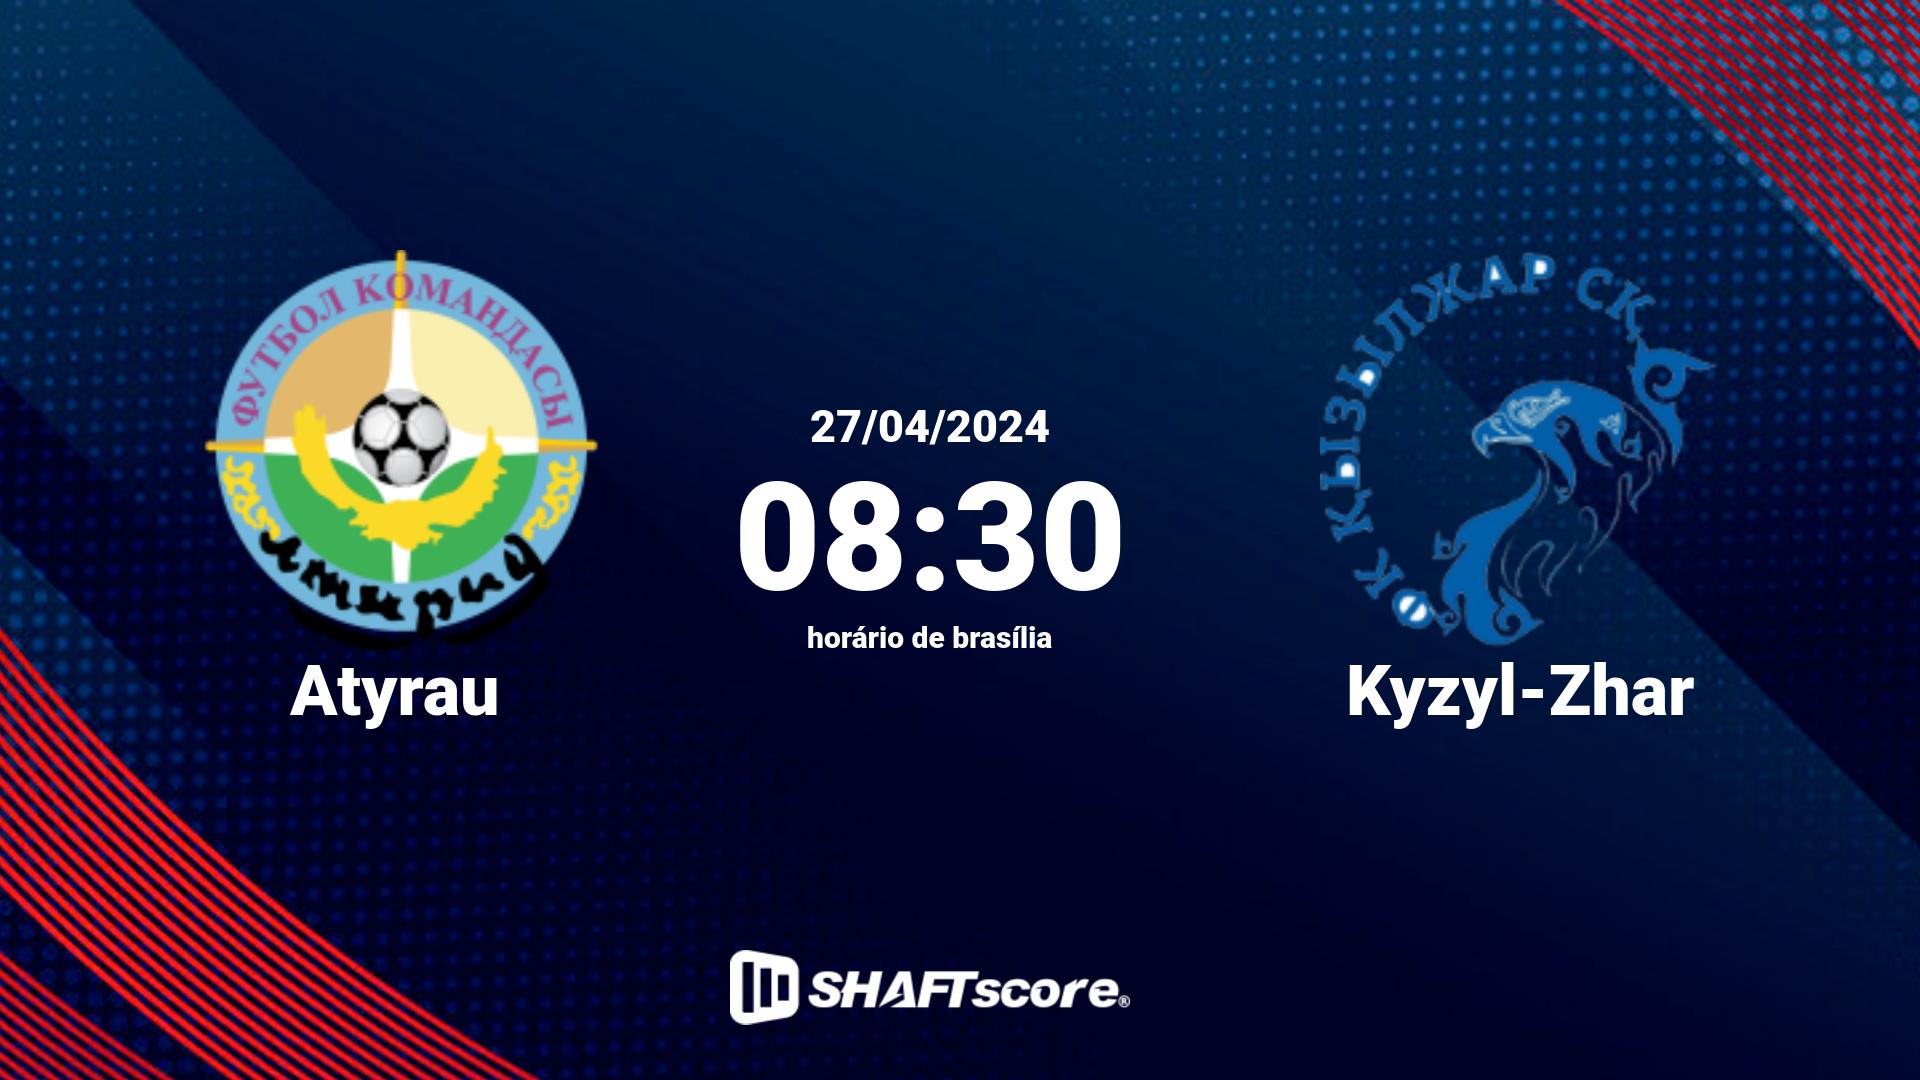 Estatísticas do jogo Atyrau vs Kyzyl-Zhar 27.04 08:30